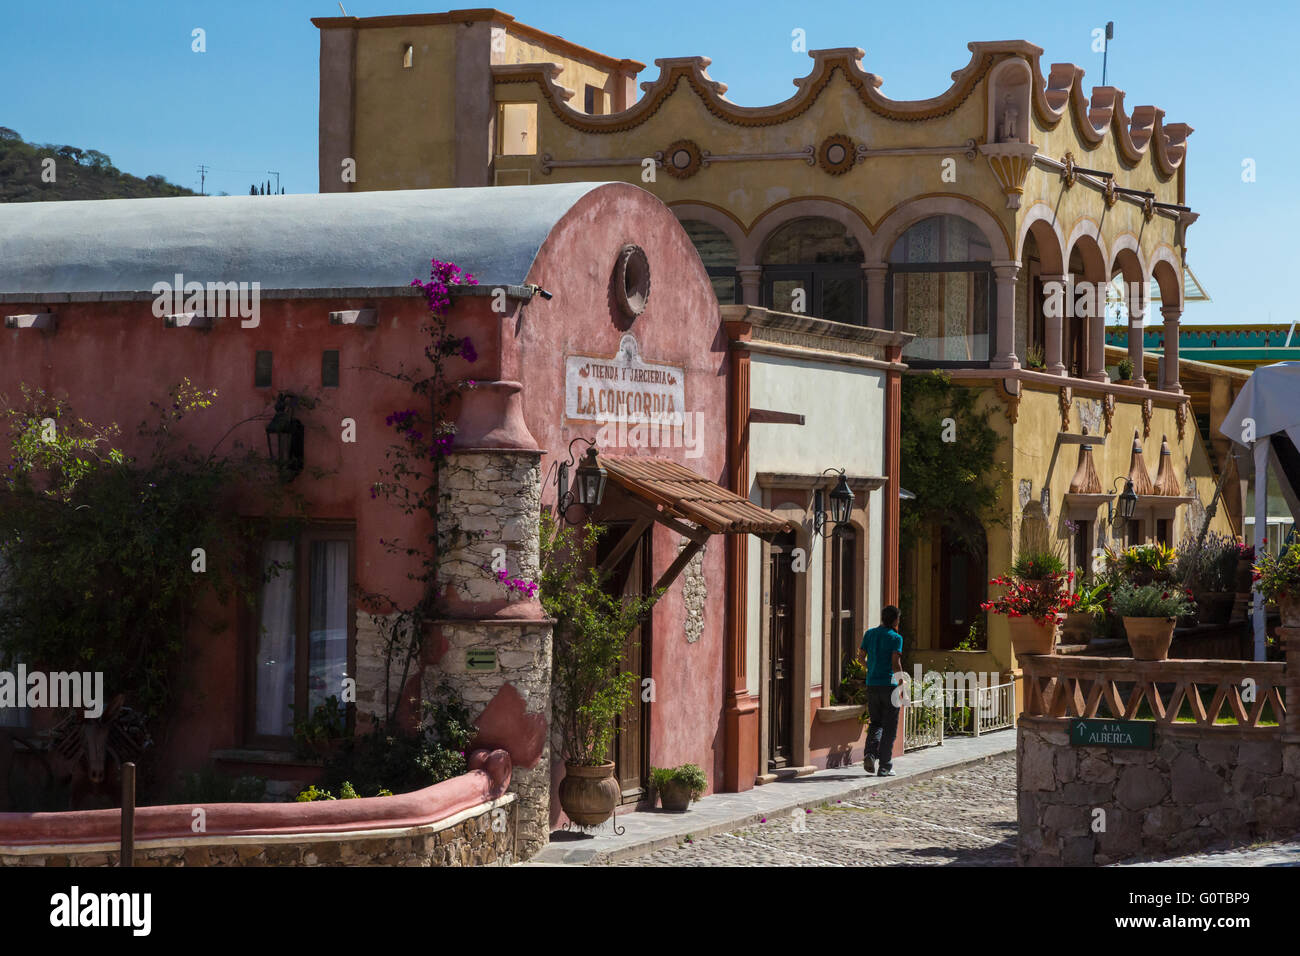 Hoteles Centenario, a castle style architecture in Pueblo Magico Bernal,  a small village in the central state of Queretaro, Mex Stock Photo